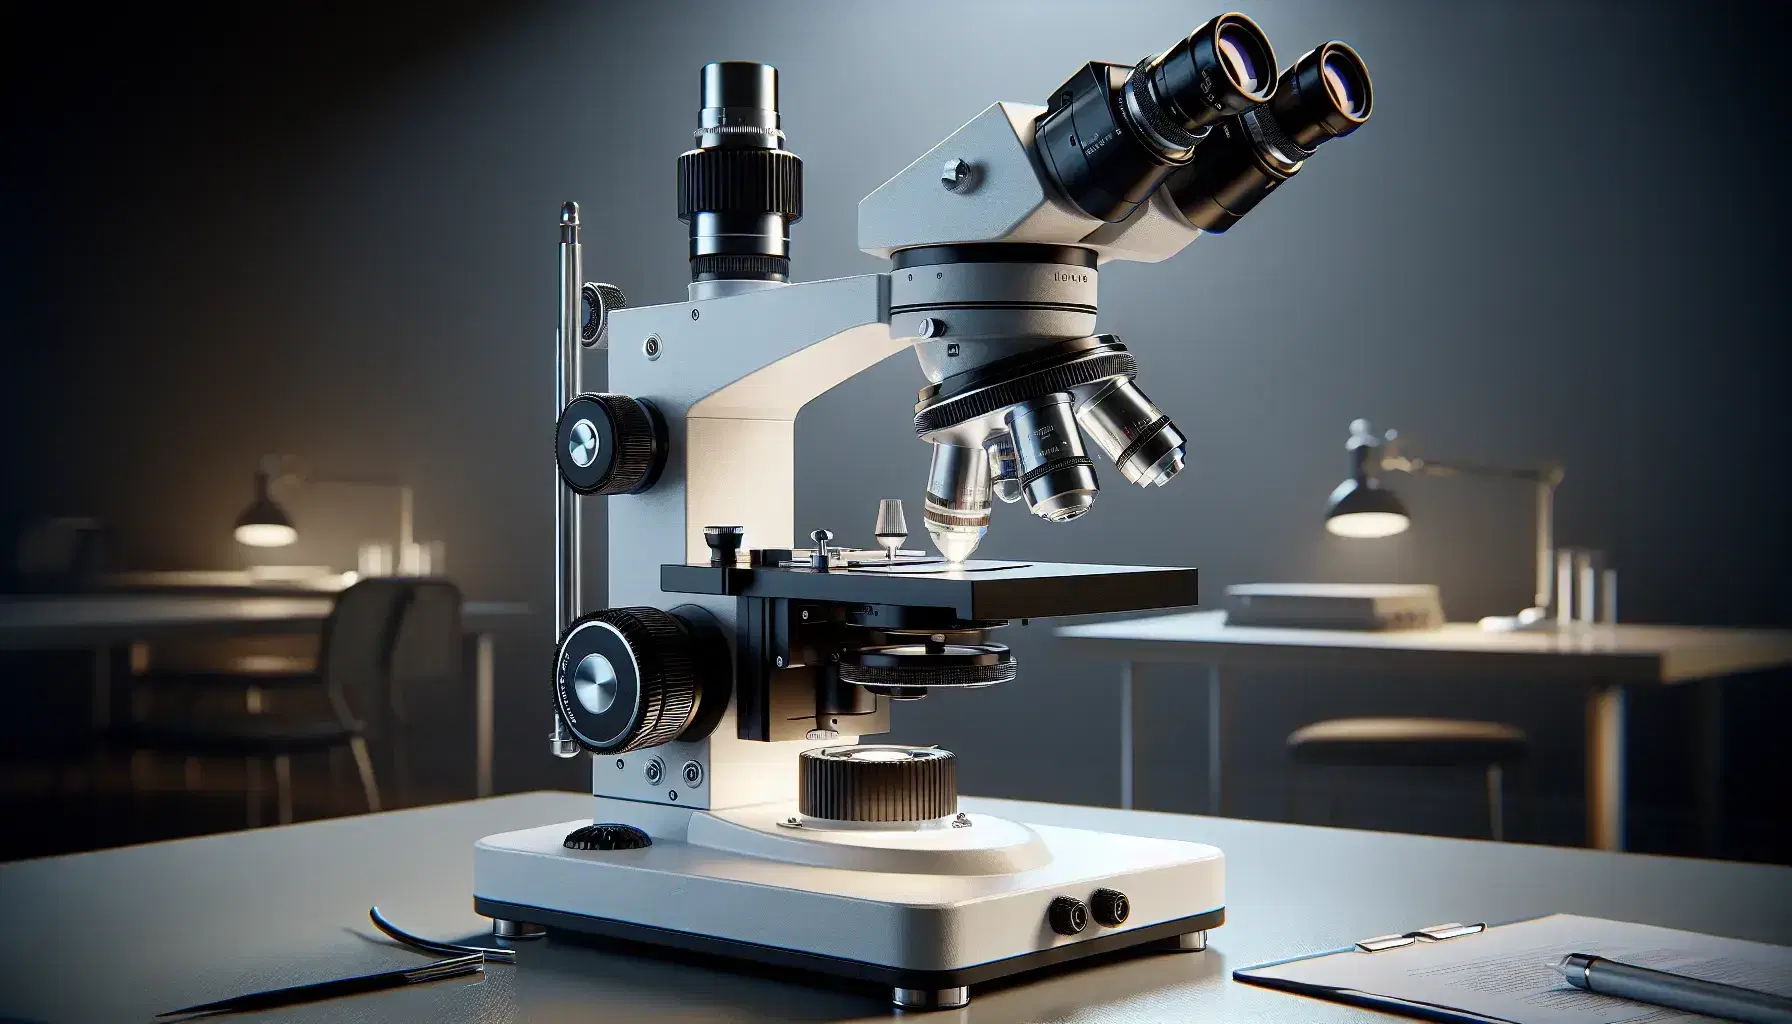 Microscopio óptico de laboratorio moderno con oculares negros, objetivos metálicos y plataforma con pinzas, en un entorno de laboratorio desenfocado.